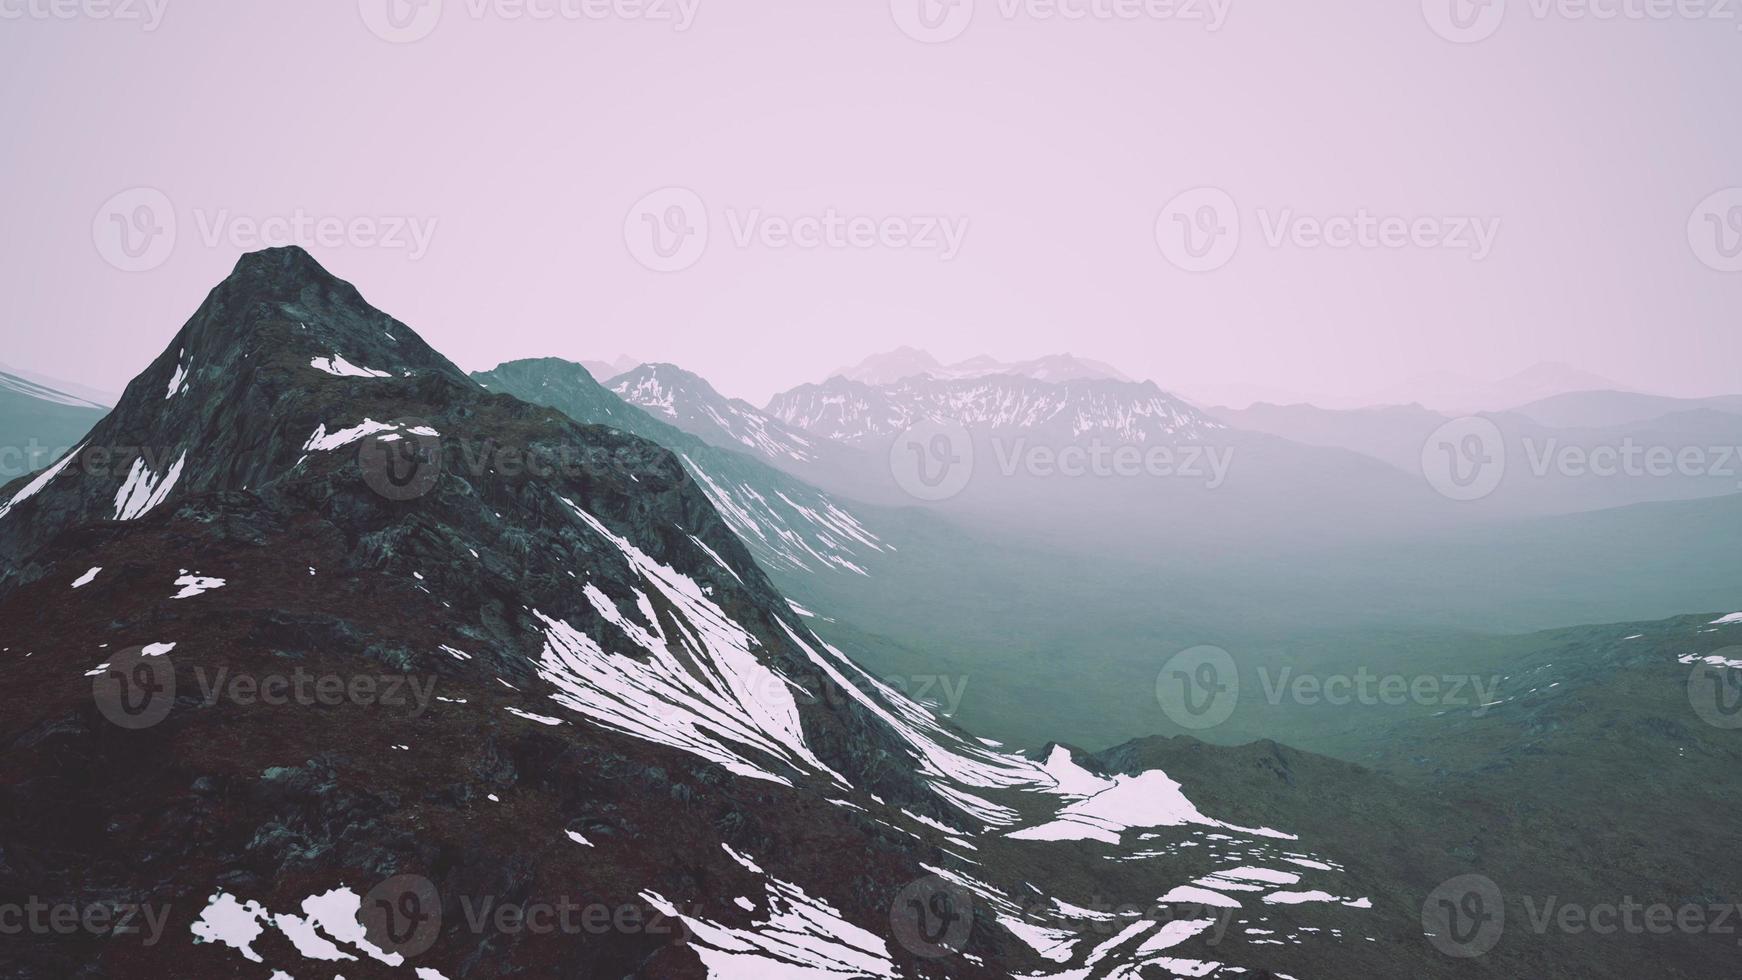 impresionante vista superior a través de las nubes a altas montañas nevadas foto